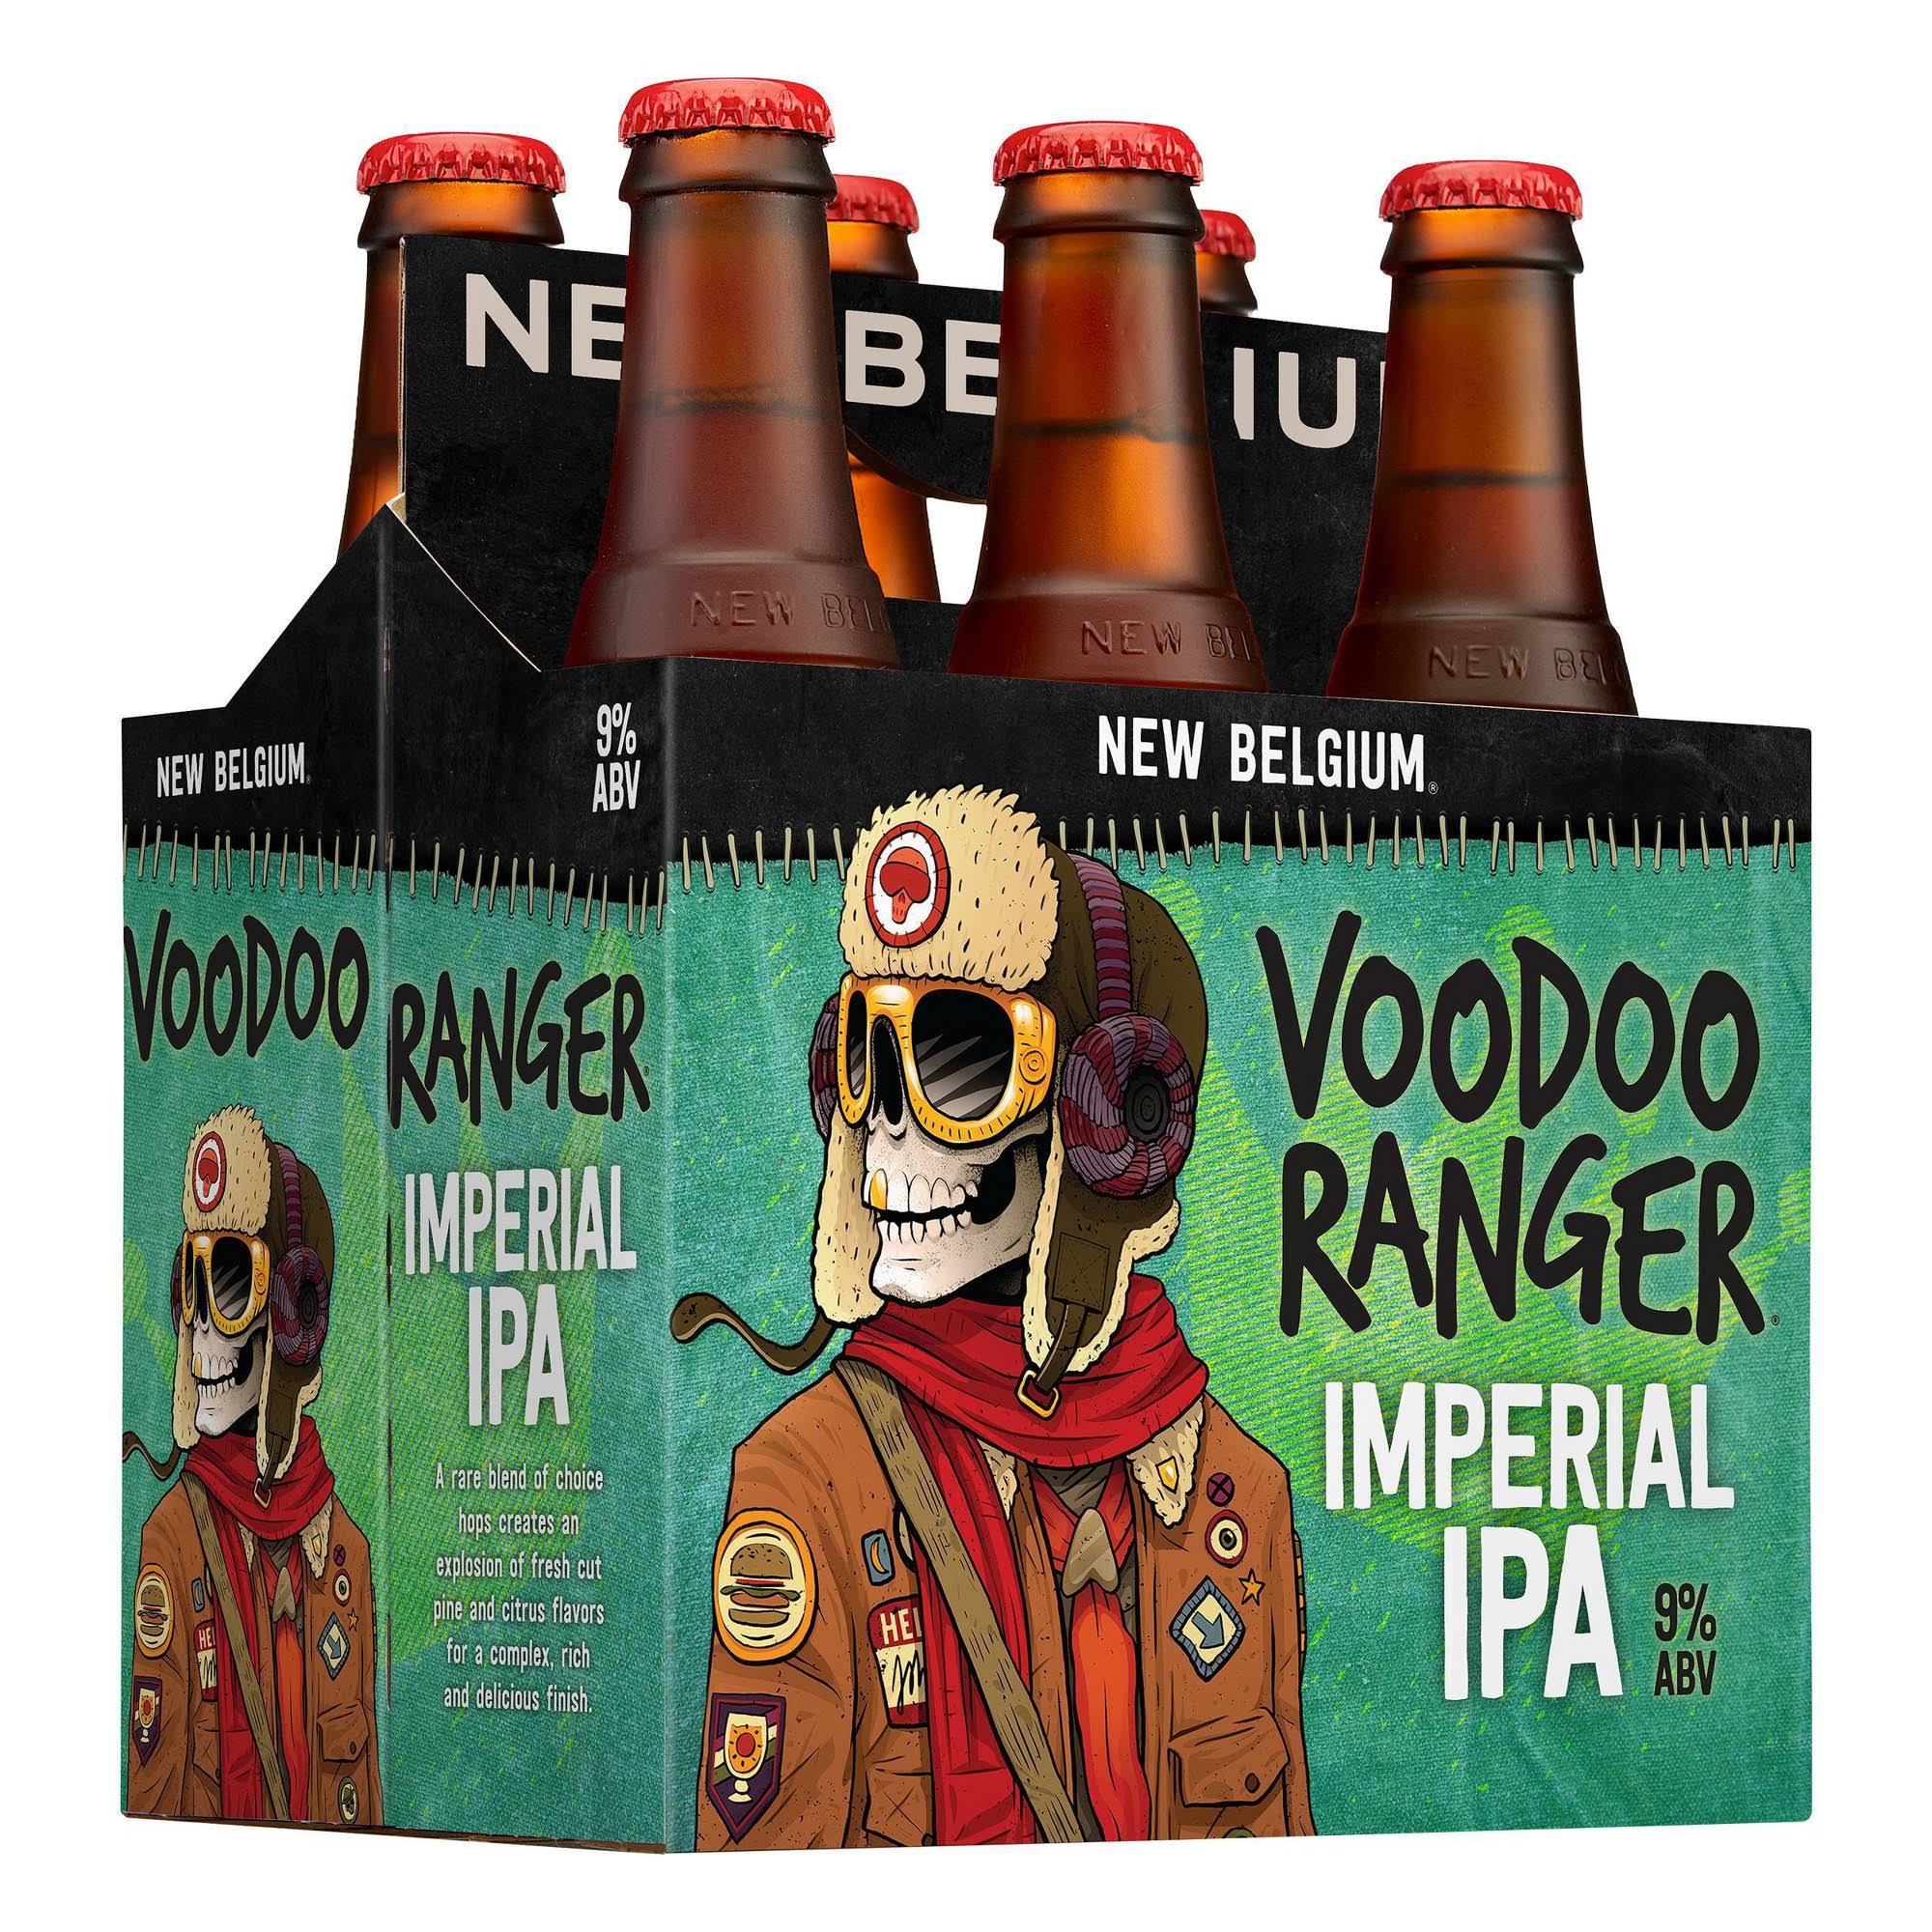 Voodoo Ranger Beer, Imperial IPA - 6 bottles